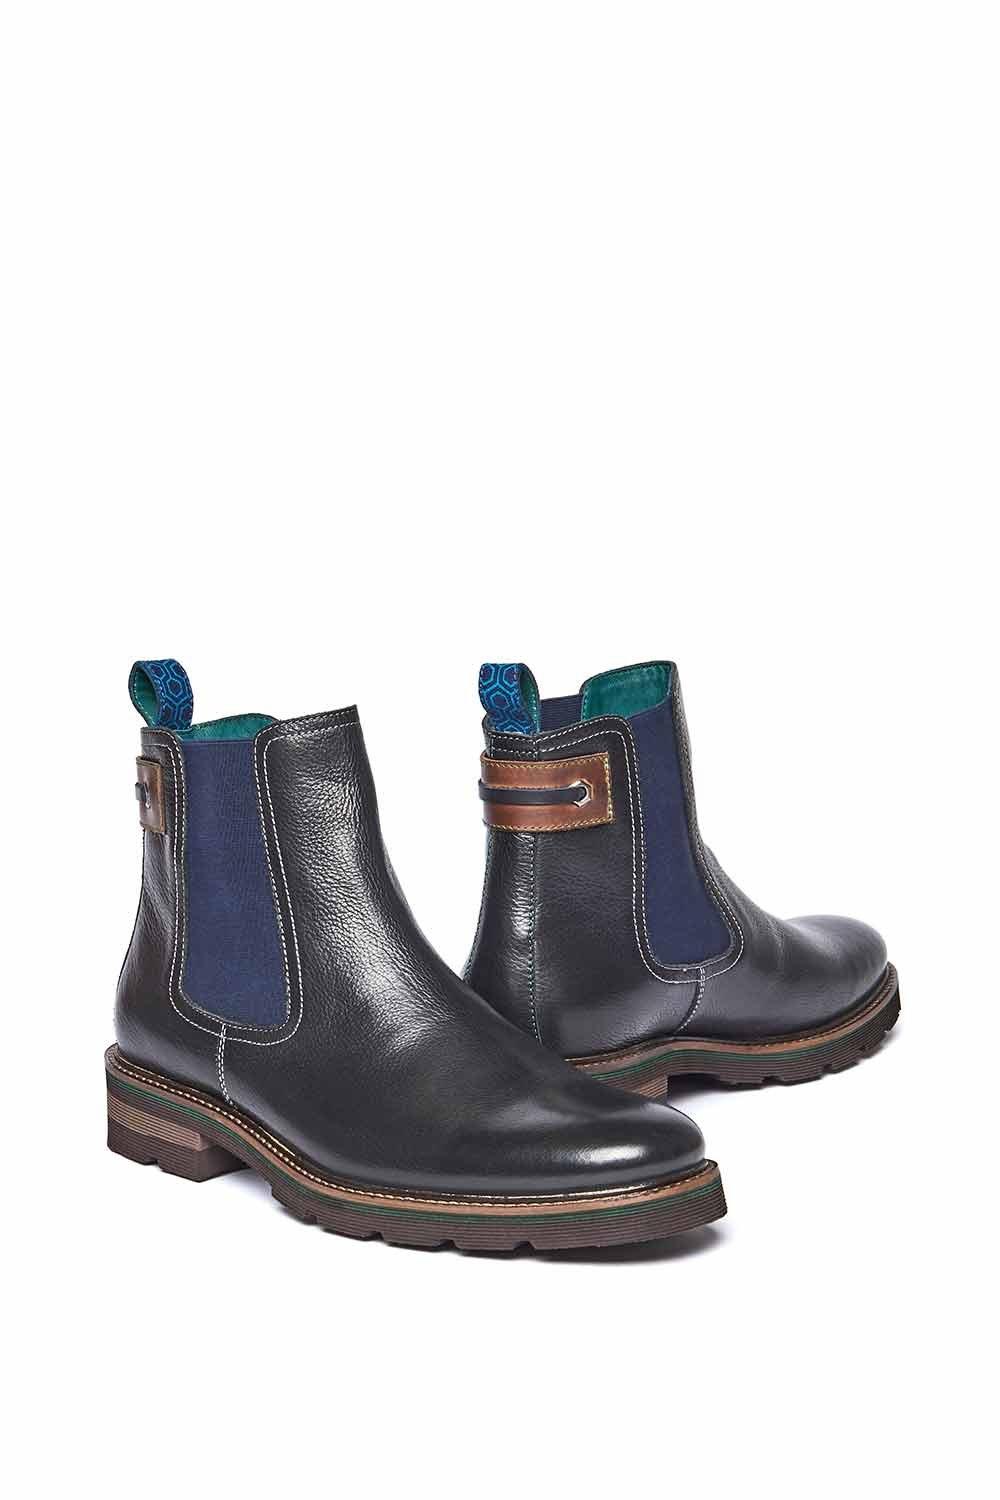 Ботинки челси «Коленвал 2» Moshulu, черный ботинки челси мужские из флока классические ботинки ручной работы без застежки черные